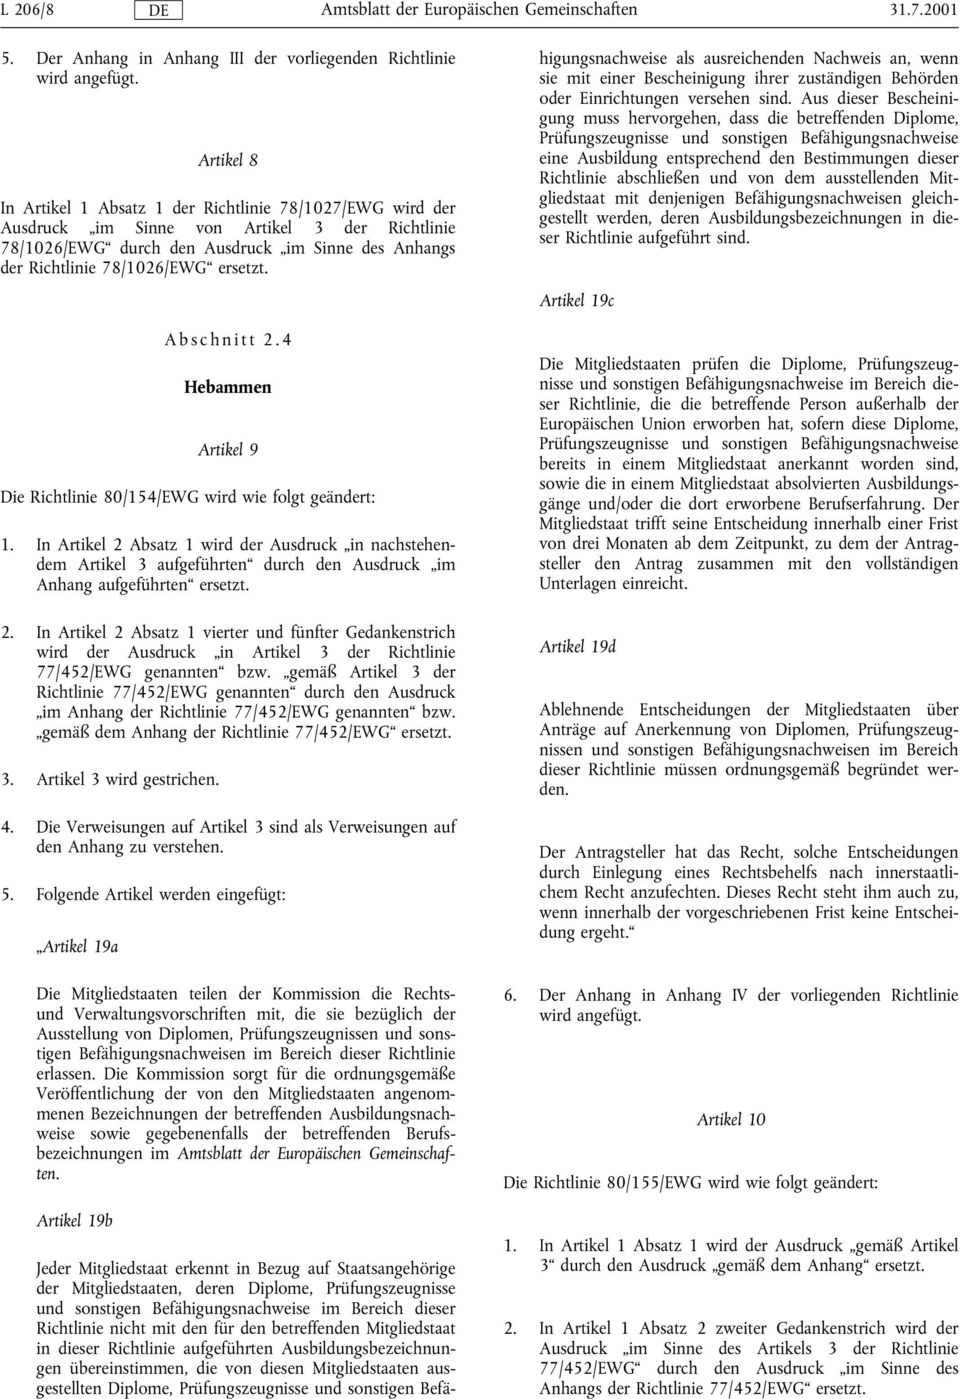 ersetzt. Abschnitt 2.4 Hebammen Artikel 9 Die Richtlinie 80/154/EWG wird wie folgt geändert: 1.